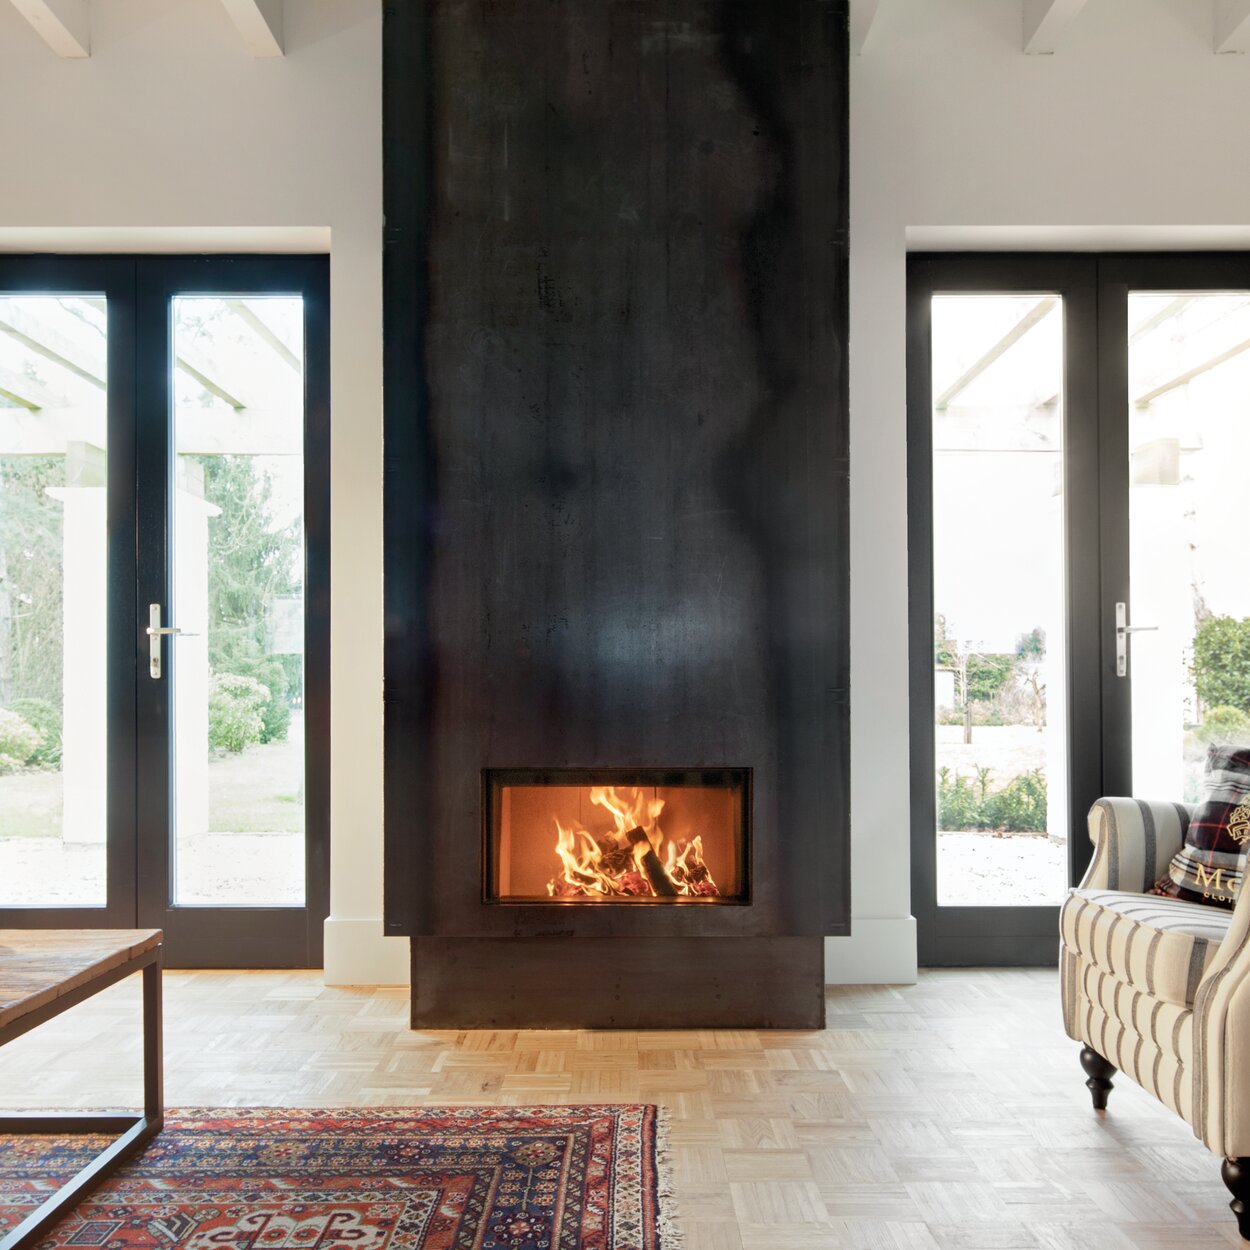 Holz-Kamin W70/33F von Kalfire mit schwarzer Stahlverkleidung in hellem Wohnraum eingemittet zwischen zwei grossen Fenstertüren